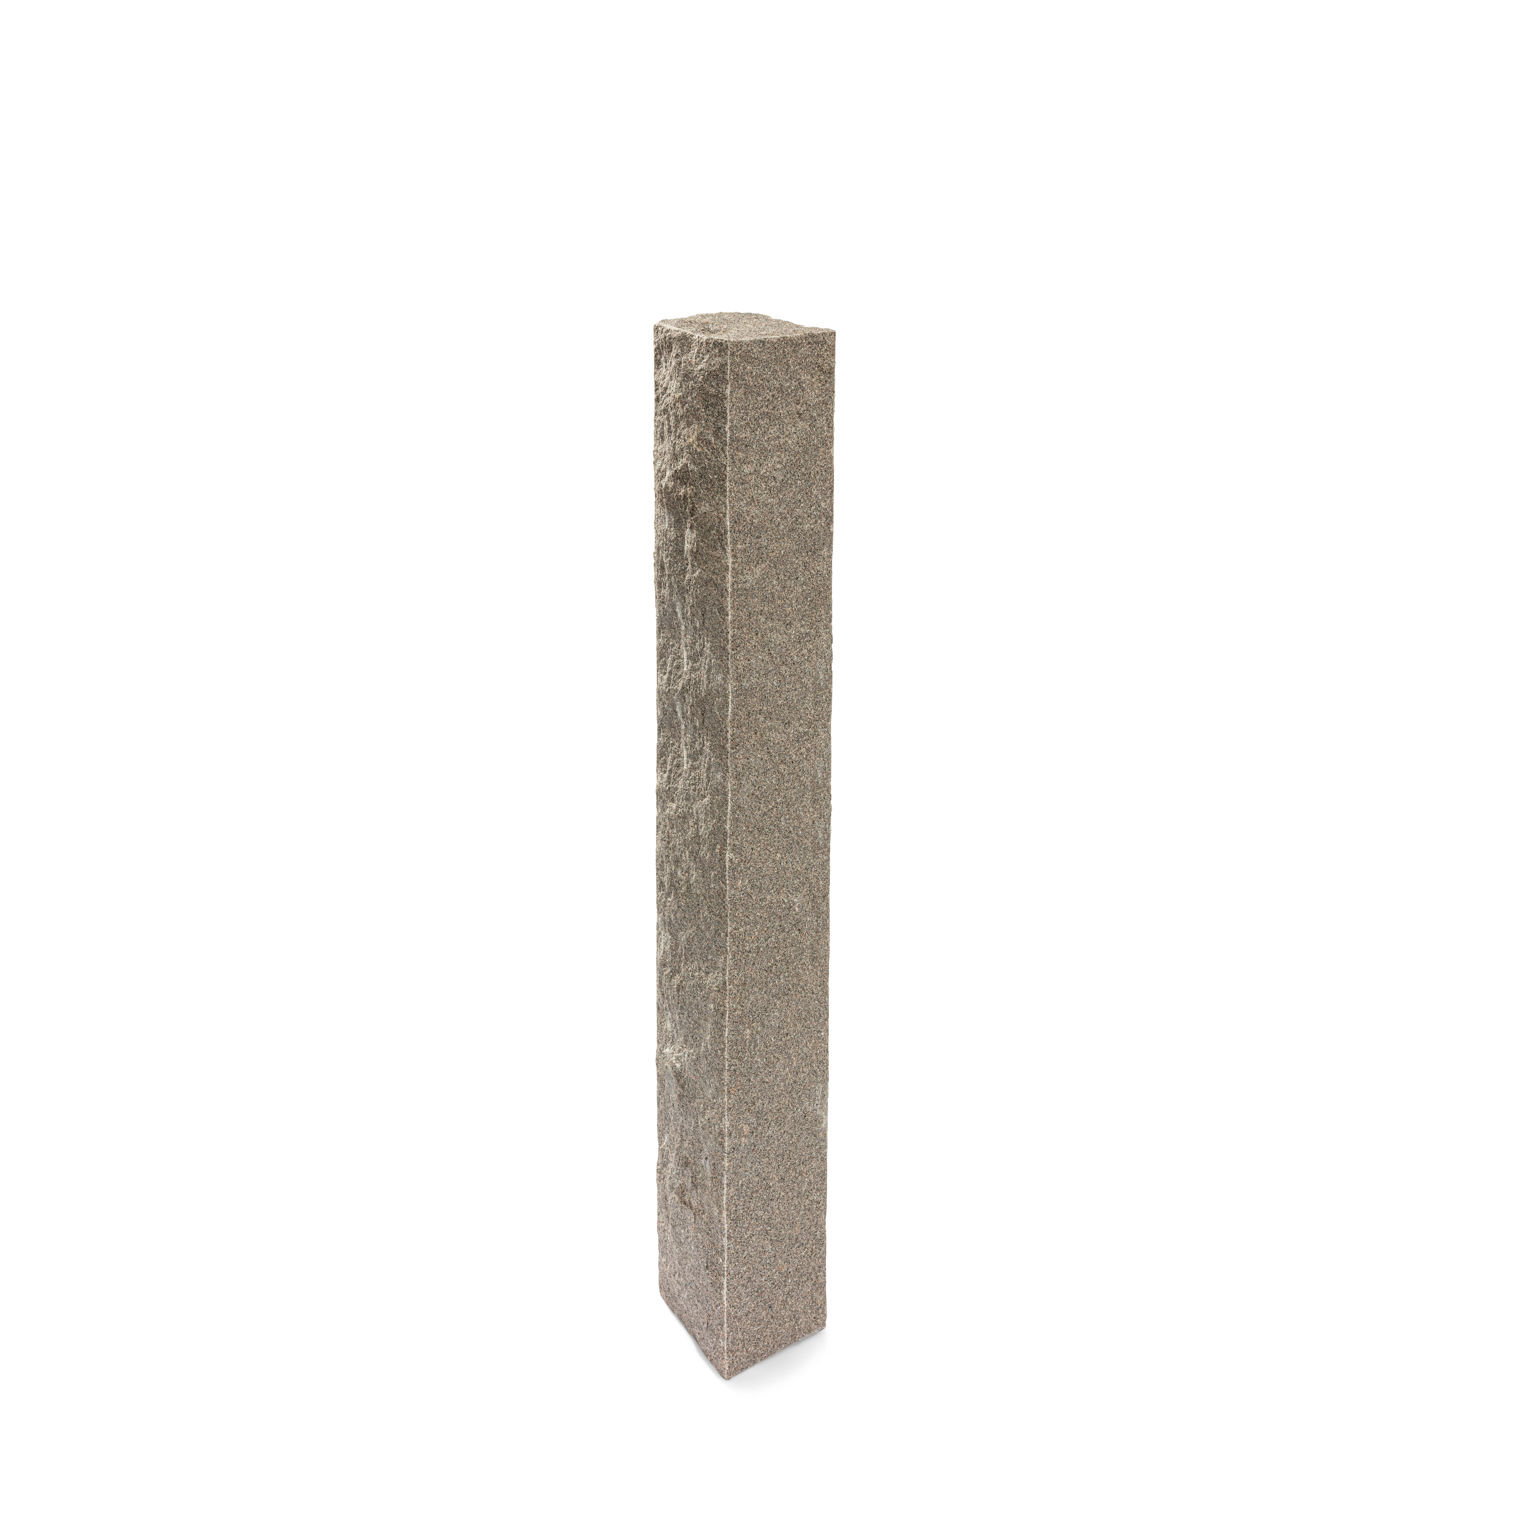 Produktbild på en stolpe i Bohus grå;granit. Stolpen har ett råkilat utförande och mäter 1500x200x200.